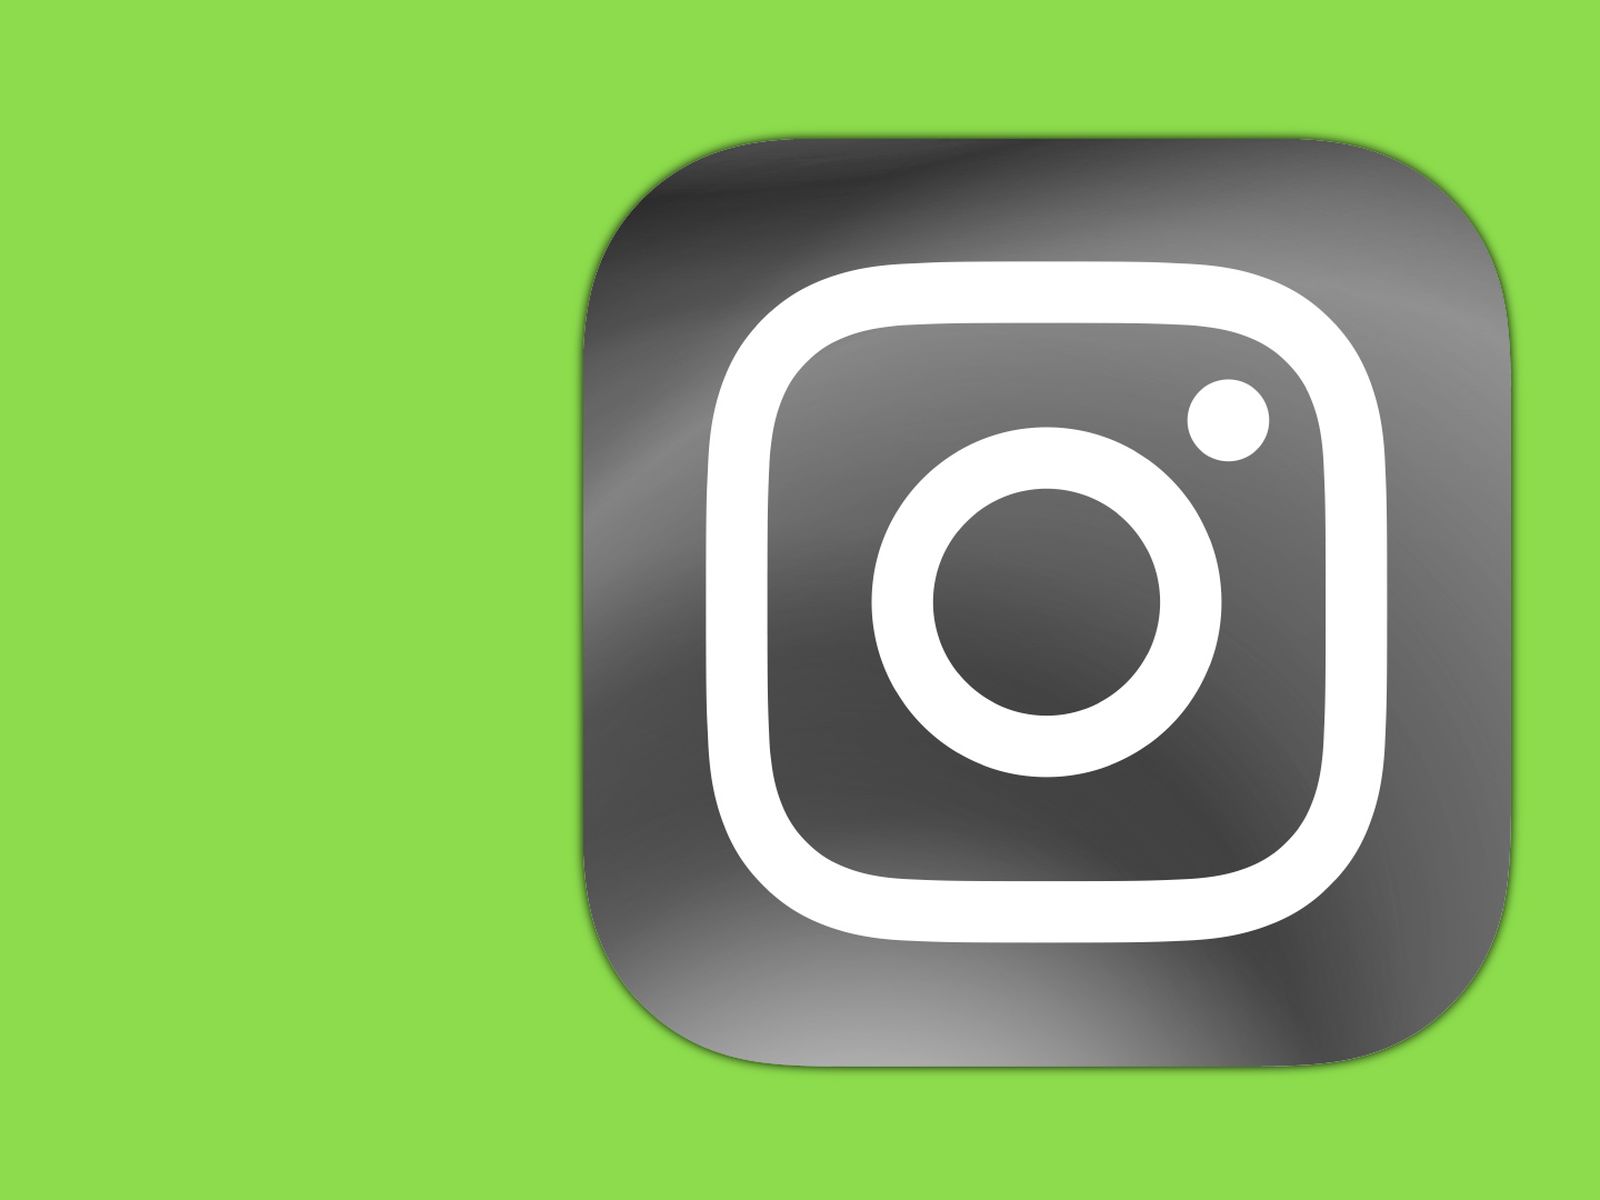 Các đối thủ của Instagram được đánh giá cao nhưng bạn có biết tại sao Instagram luôn dẫn đầu về hình ảnh và video chất lượng? Hãy xem ảnh liên quan để khám phá bí quyết của Instagram!